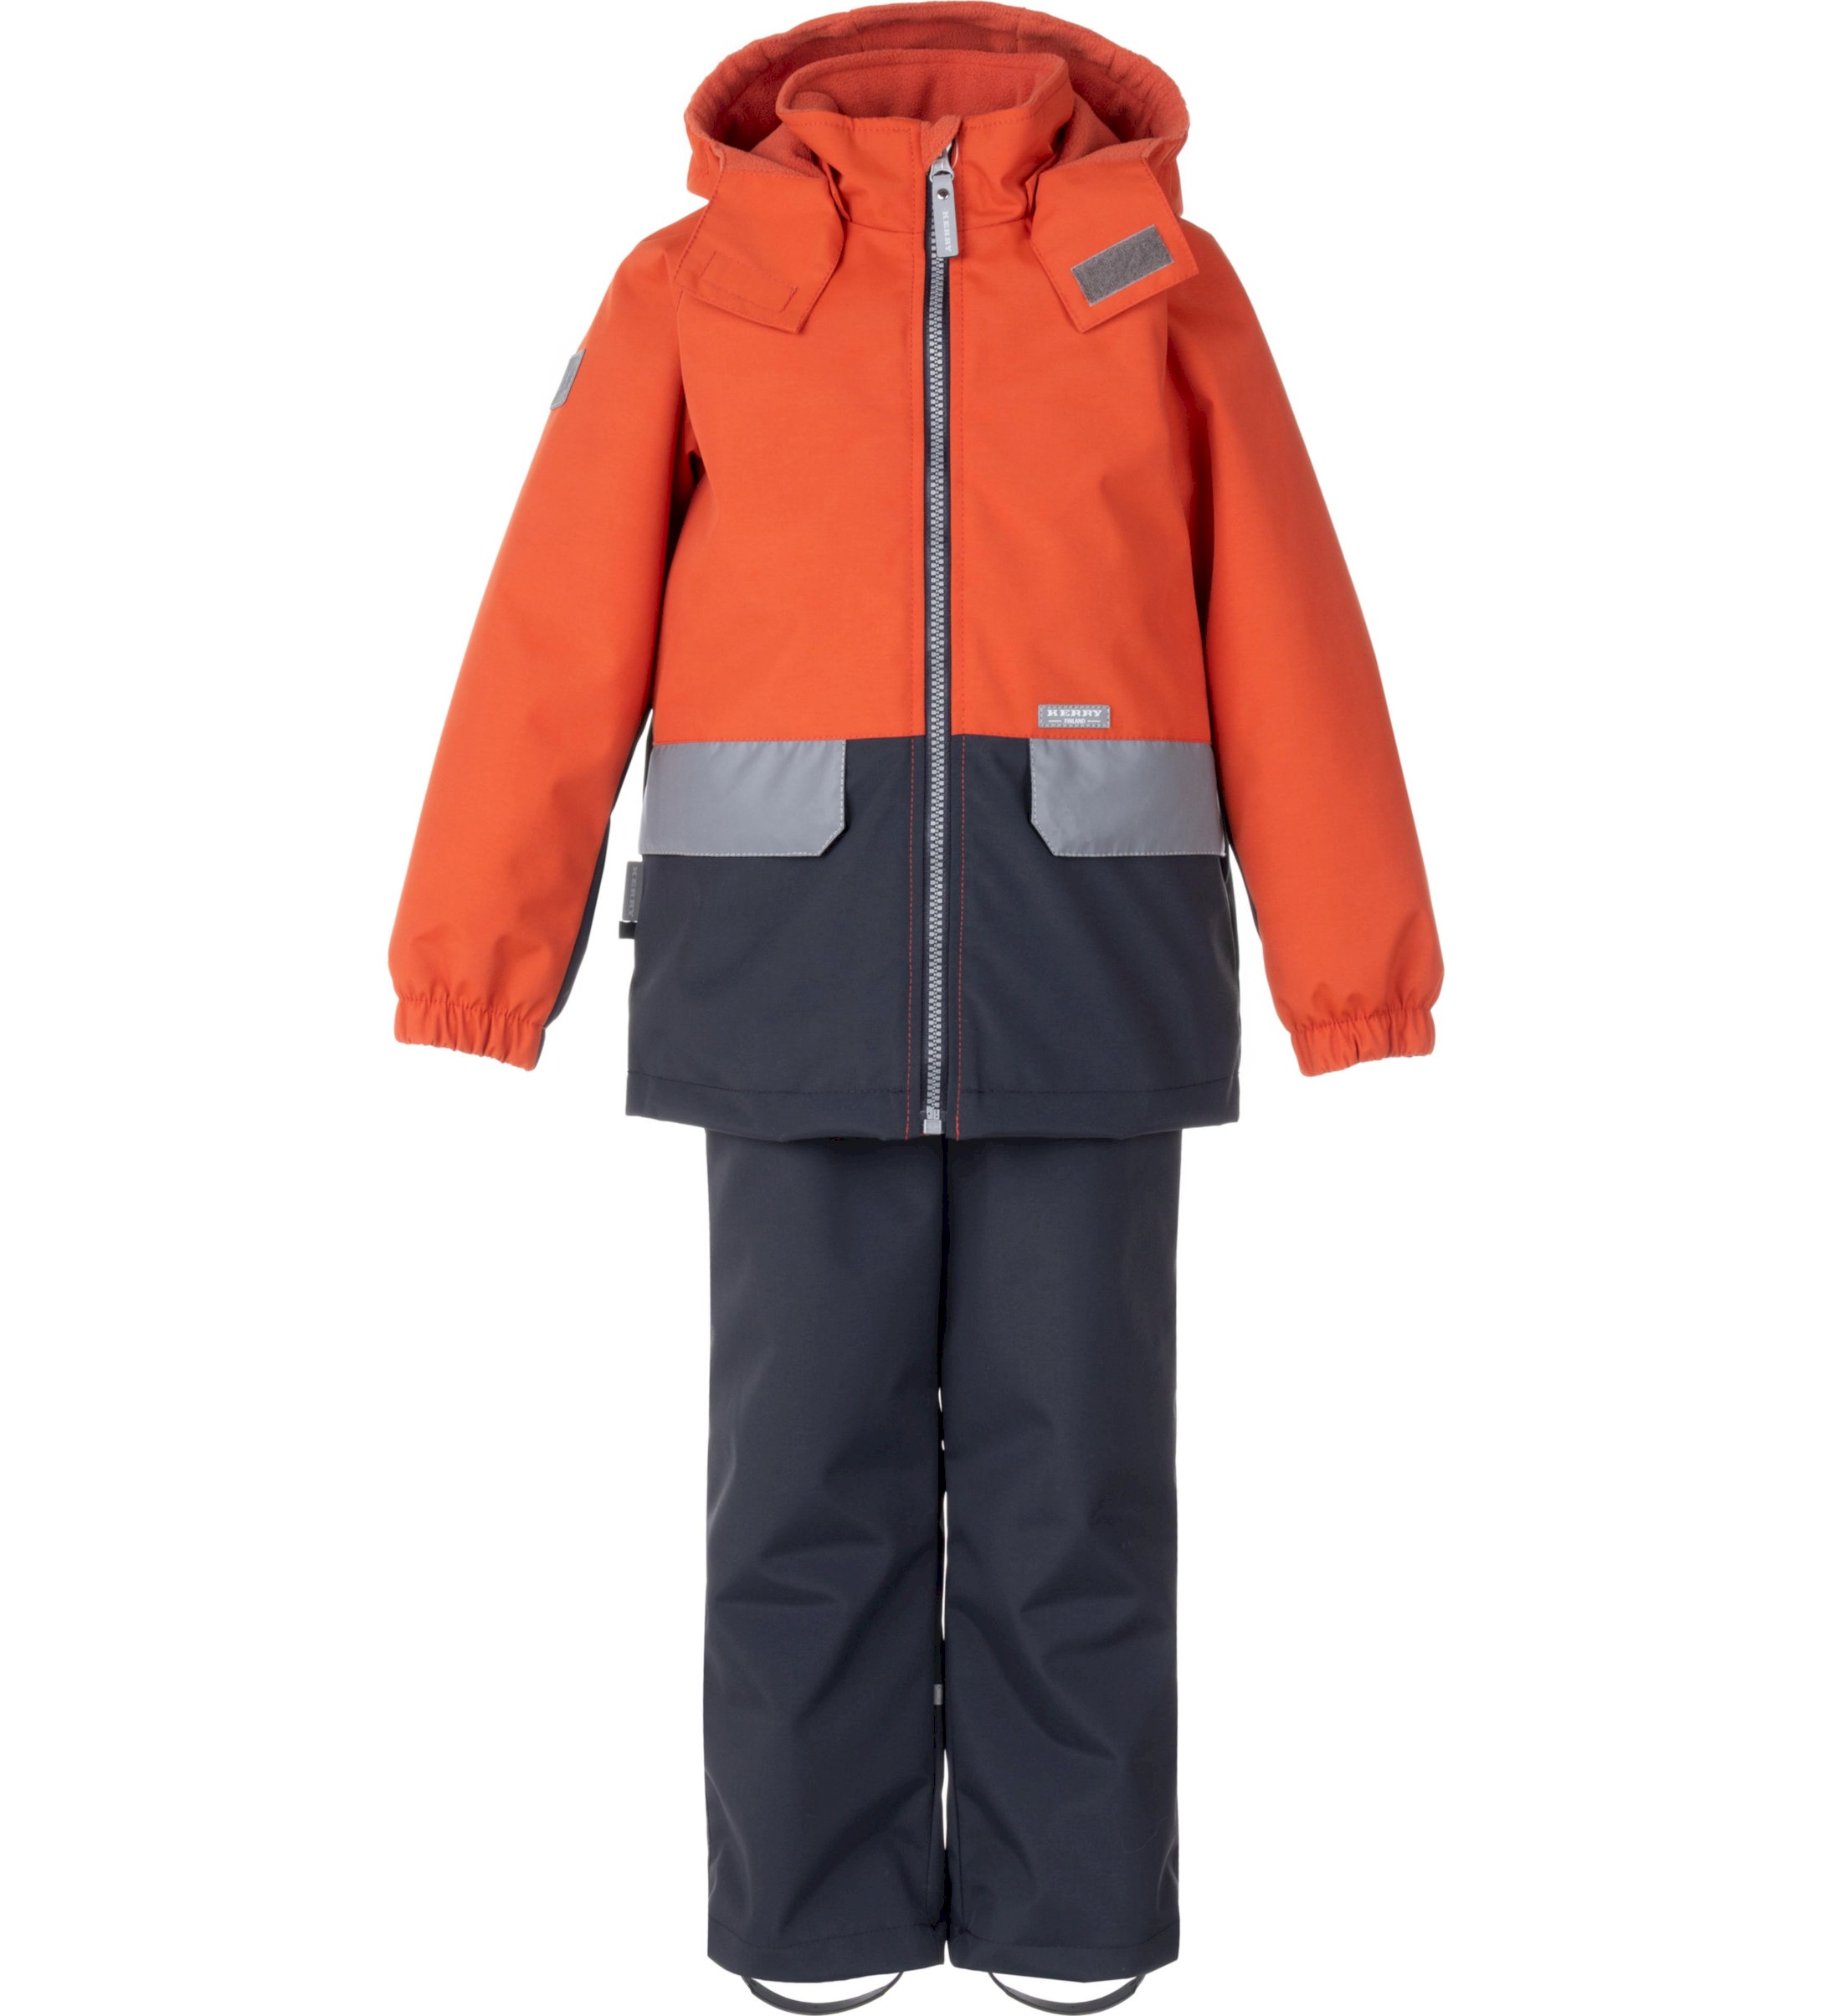 Комплект верхней одежды детский KERRY K24020, оранжевый; серый, 116 пылесос bort bac 500 22 900 вт сухая влажная уборка 22 л серый